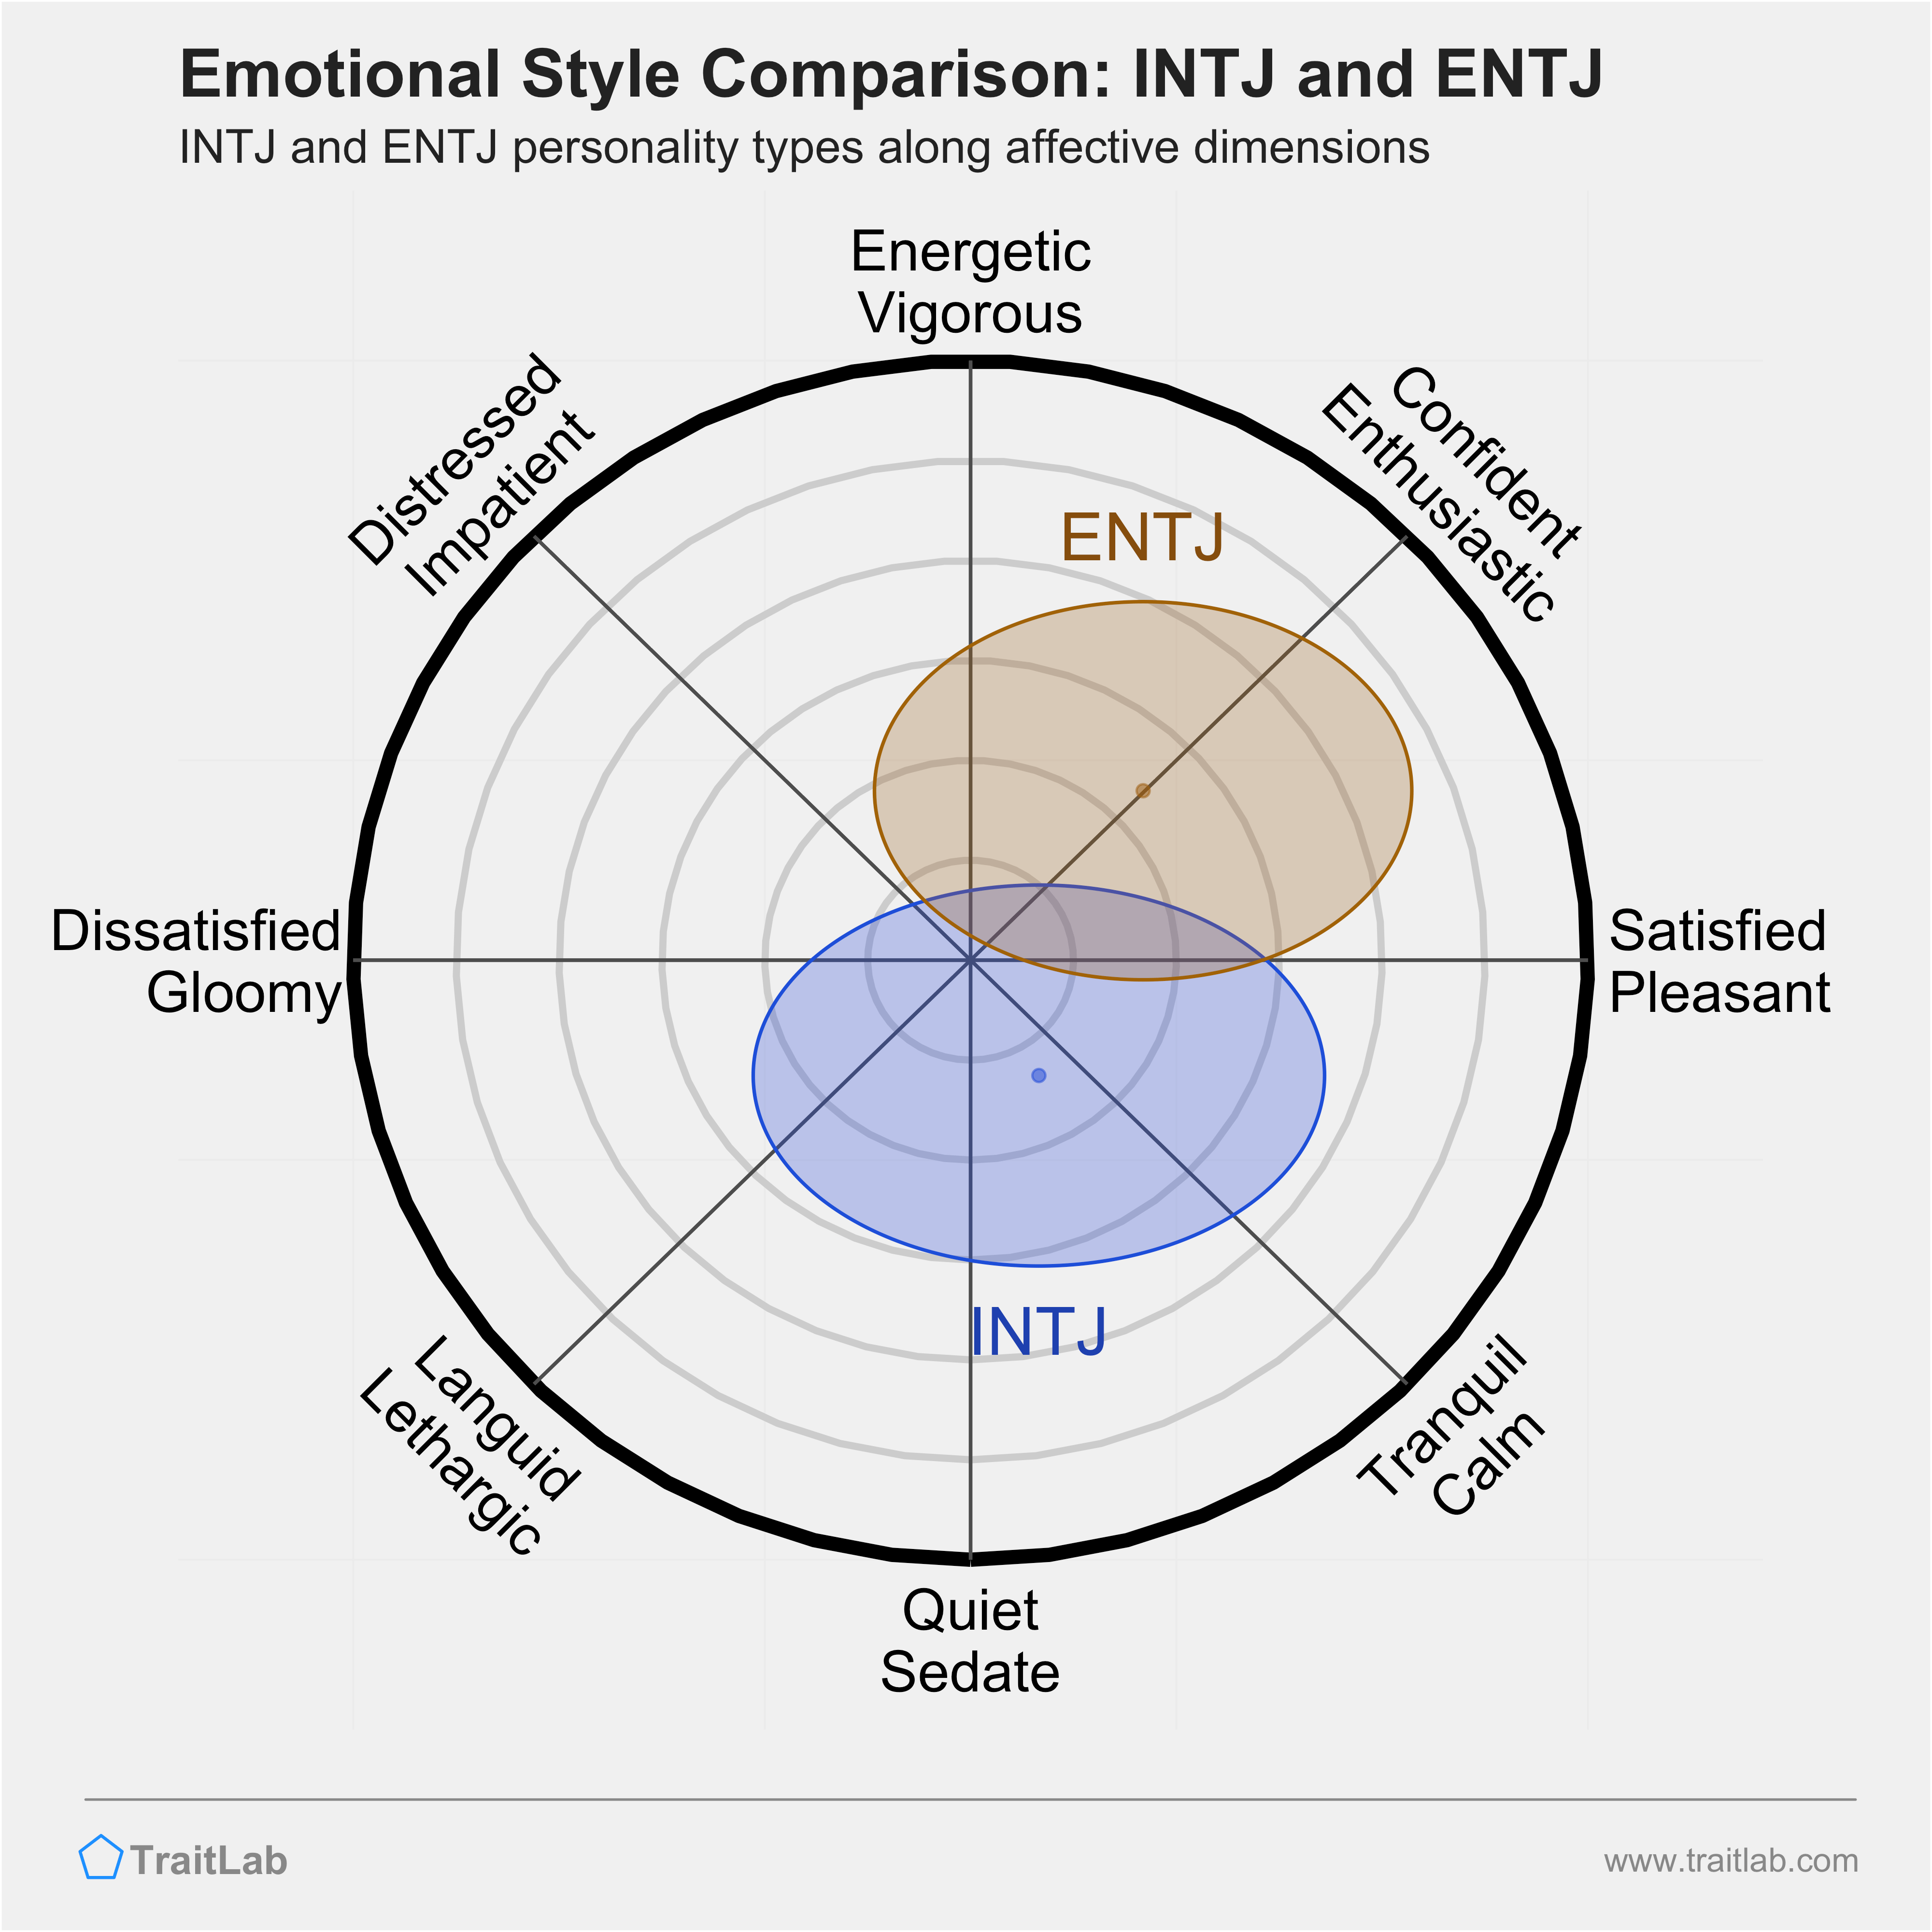 INTJ and ENTJ comparison across emotional (affective) dimensions